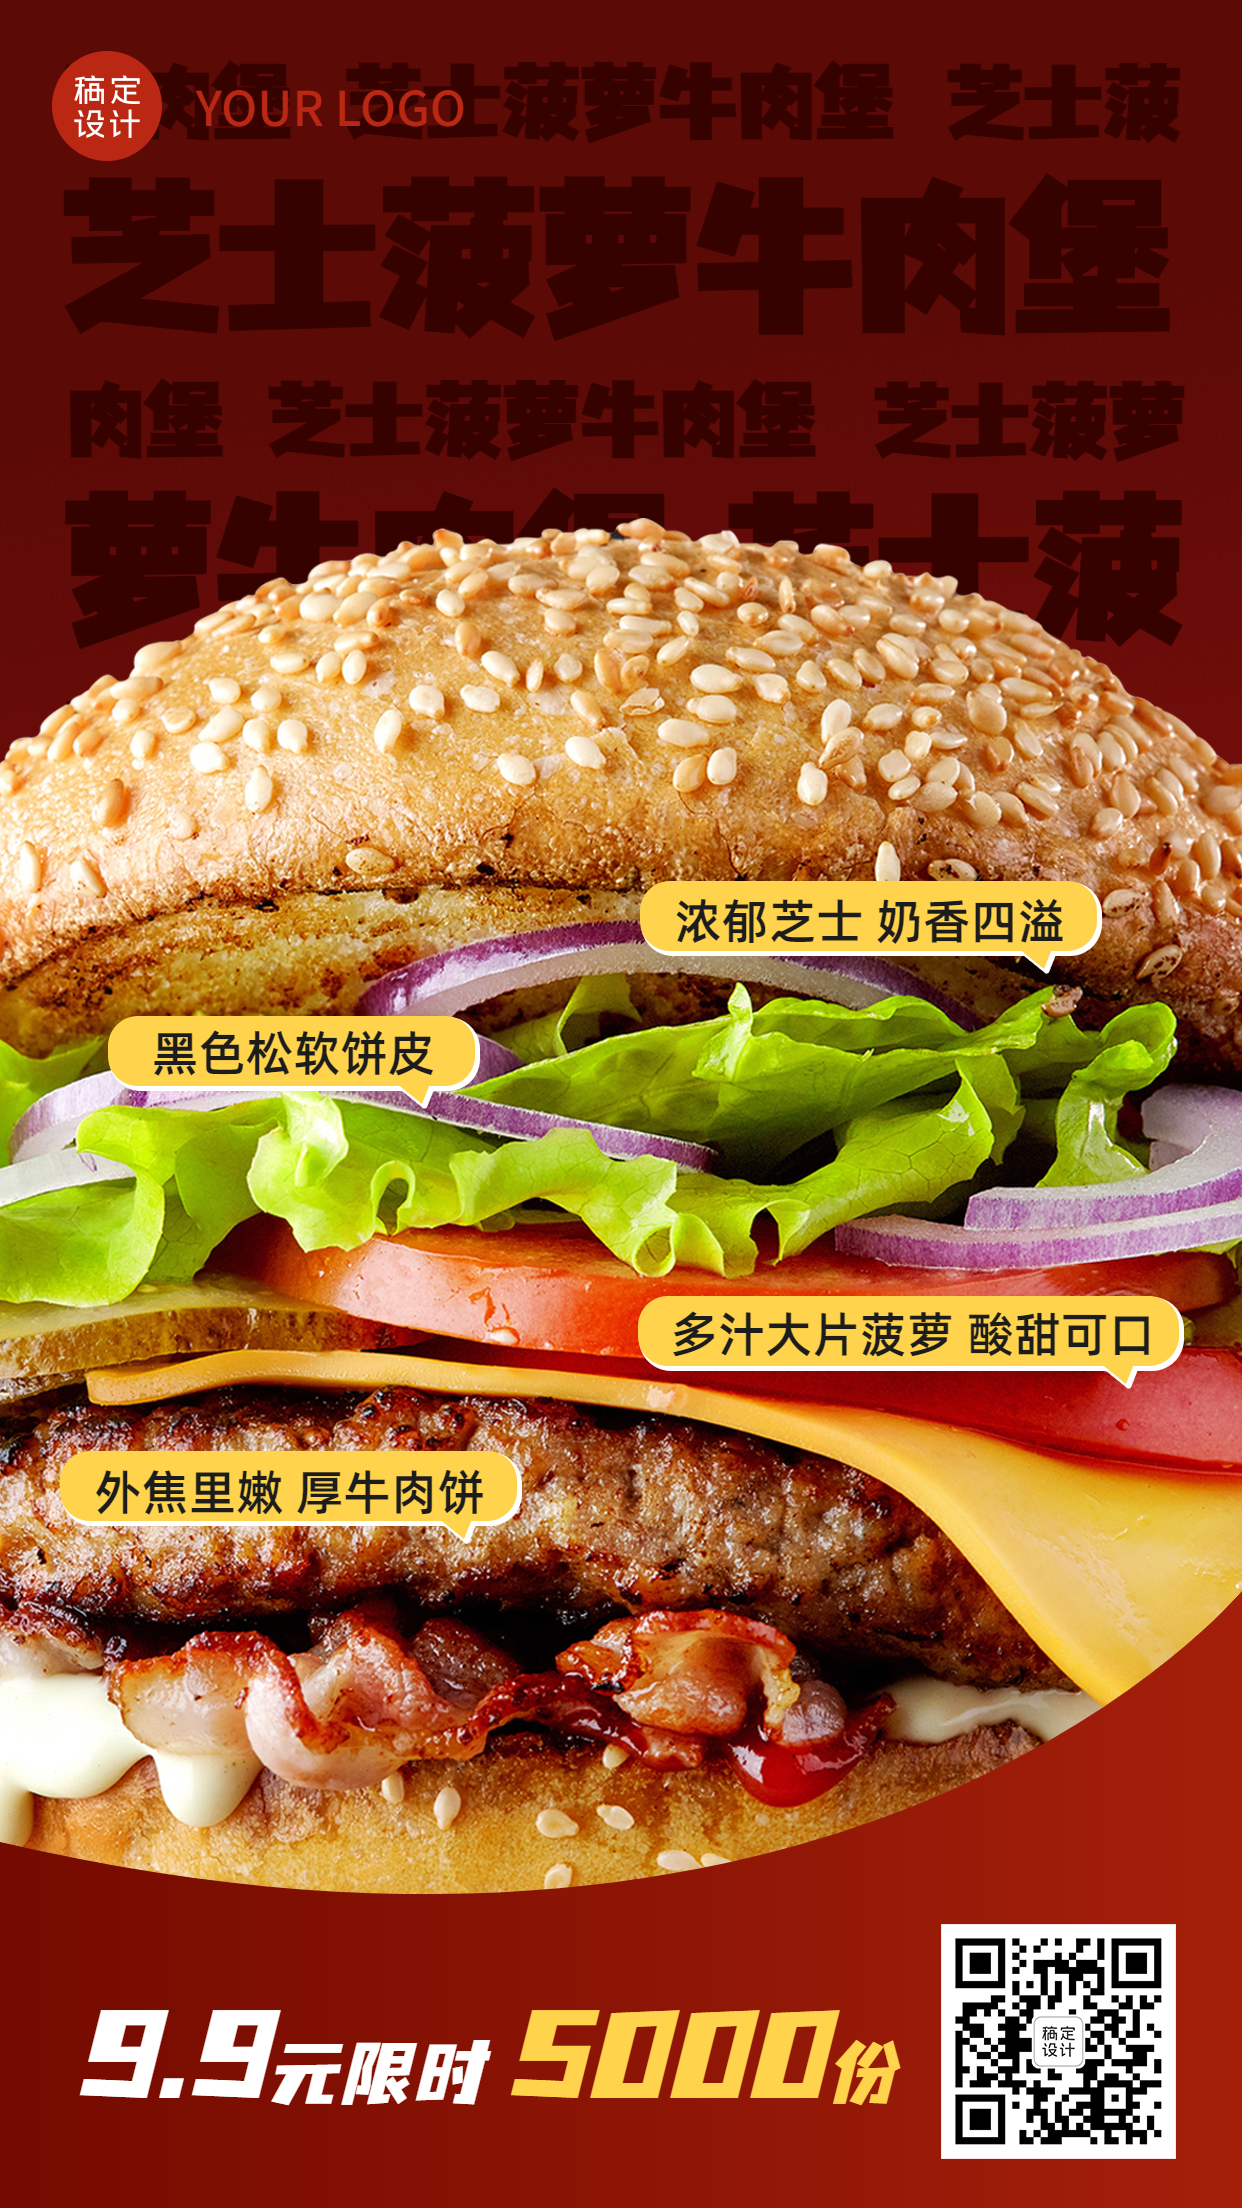 炸鸡汉堡活动促销实景手机海报预览效果